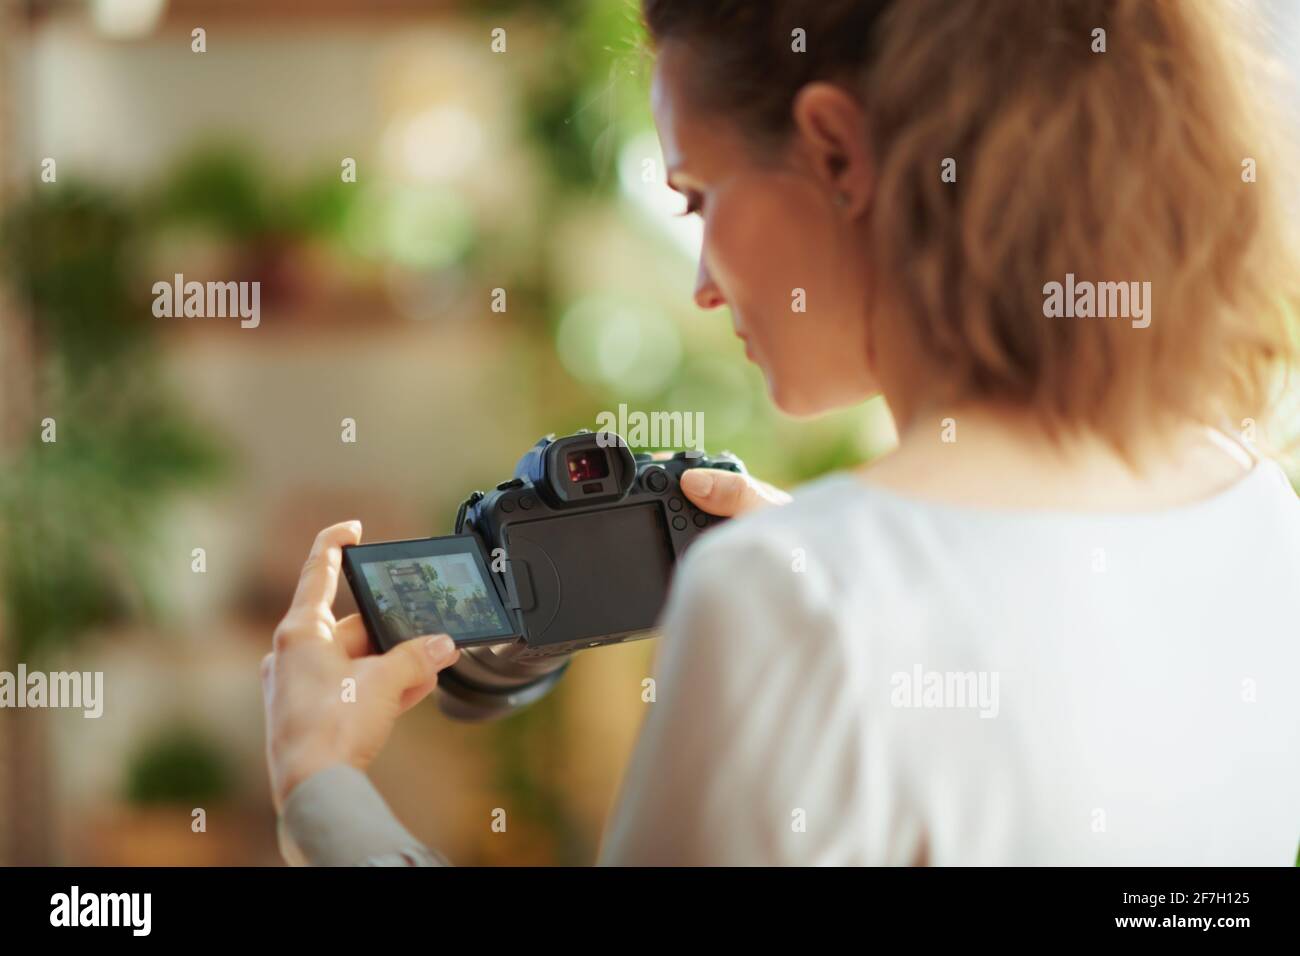 Innenaufnahmen von hinten gesehen junge Fotografin mit spiegelloser Kamera  im modernen Wohnzimmer an sonnigen Tagen Stockfotografie - Alamy